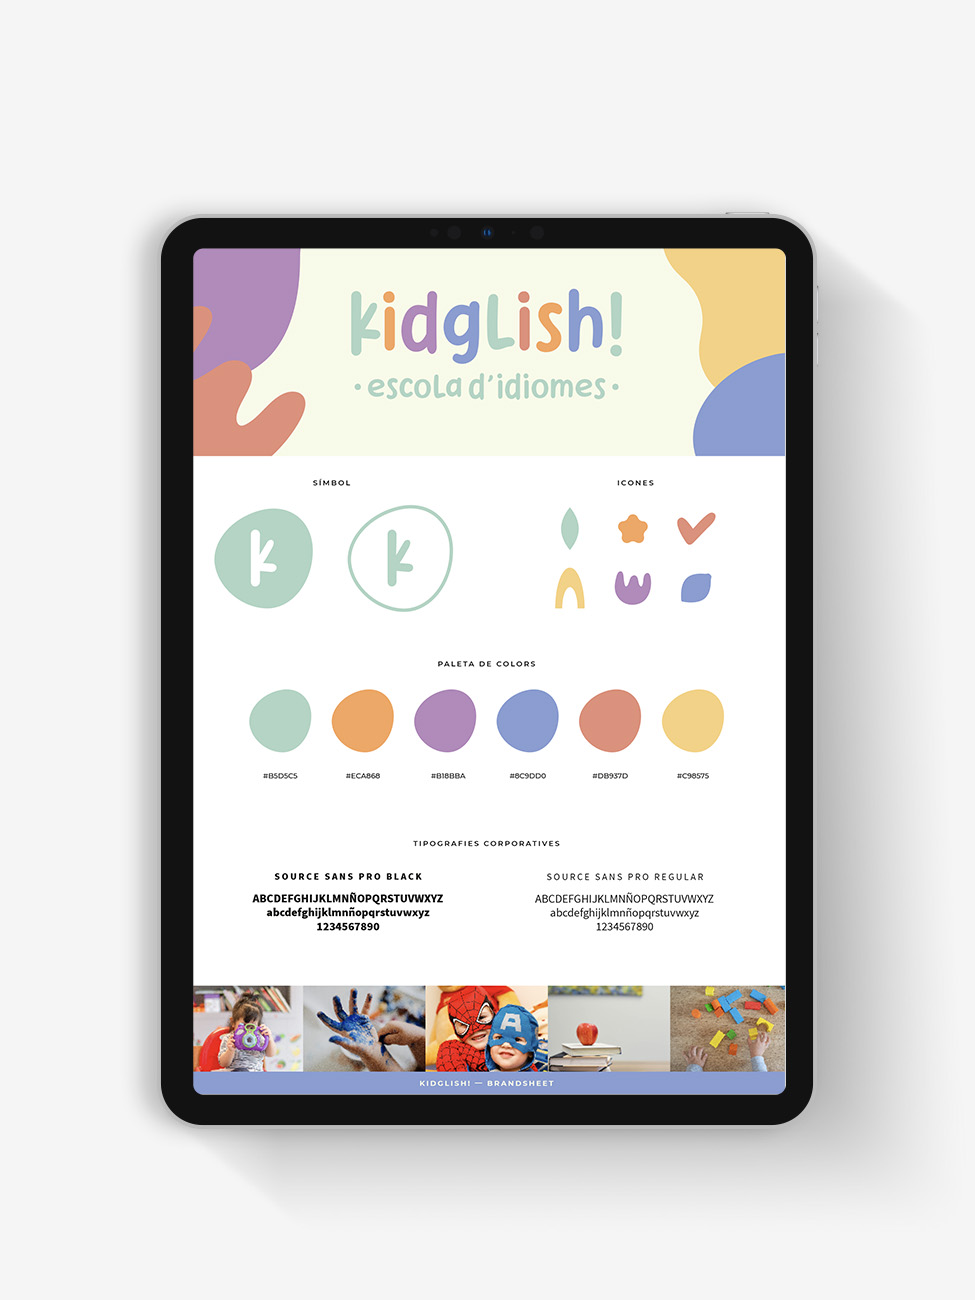 iPad amb el brandboard de Kidglish!, on hi ha el logo, els símbols, les icones, la paleta de colors i les tipografies corporatives